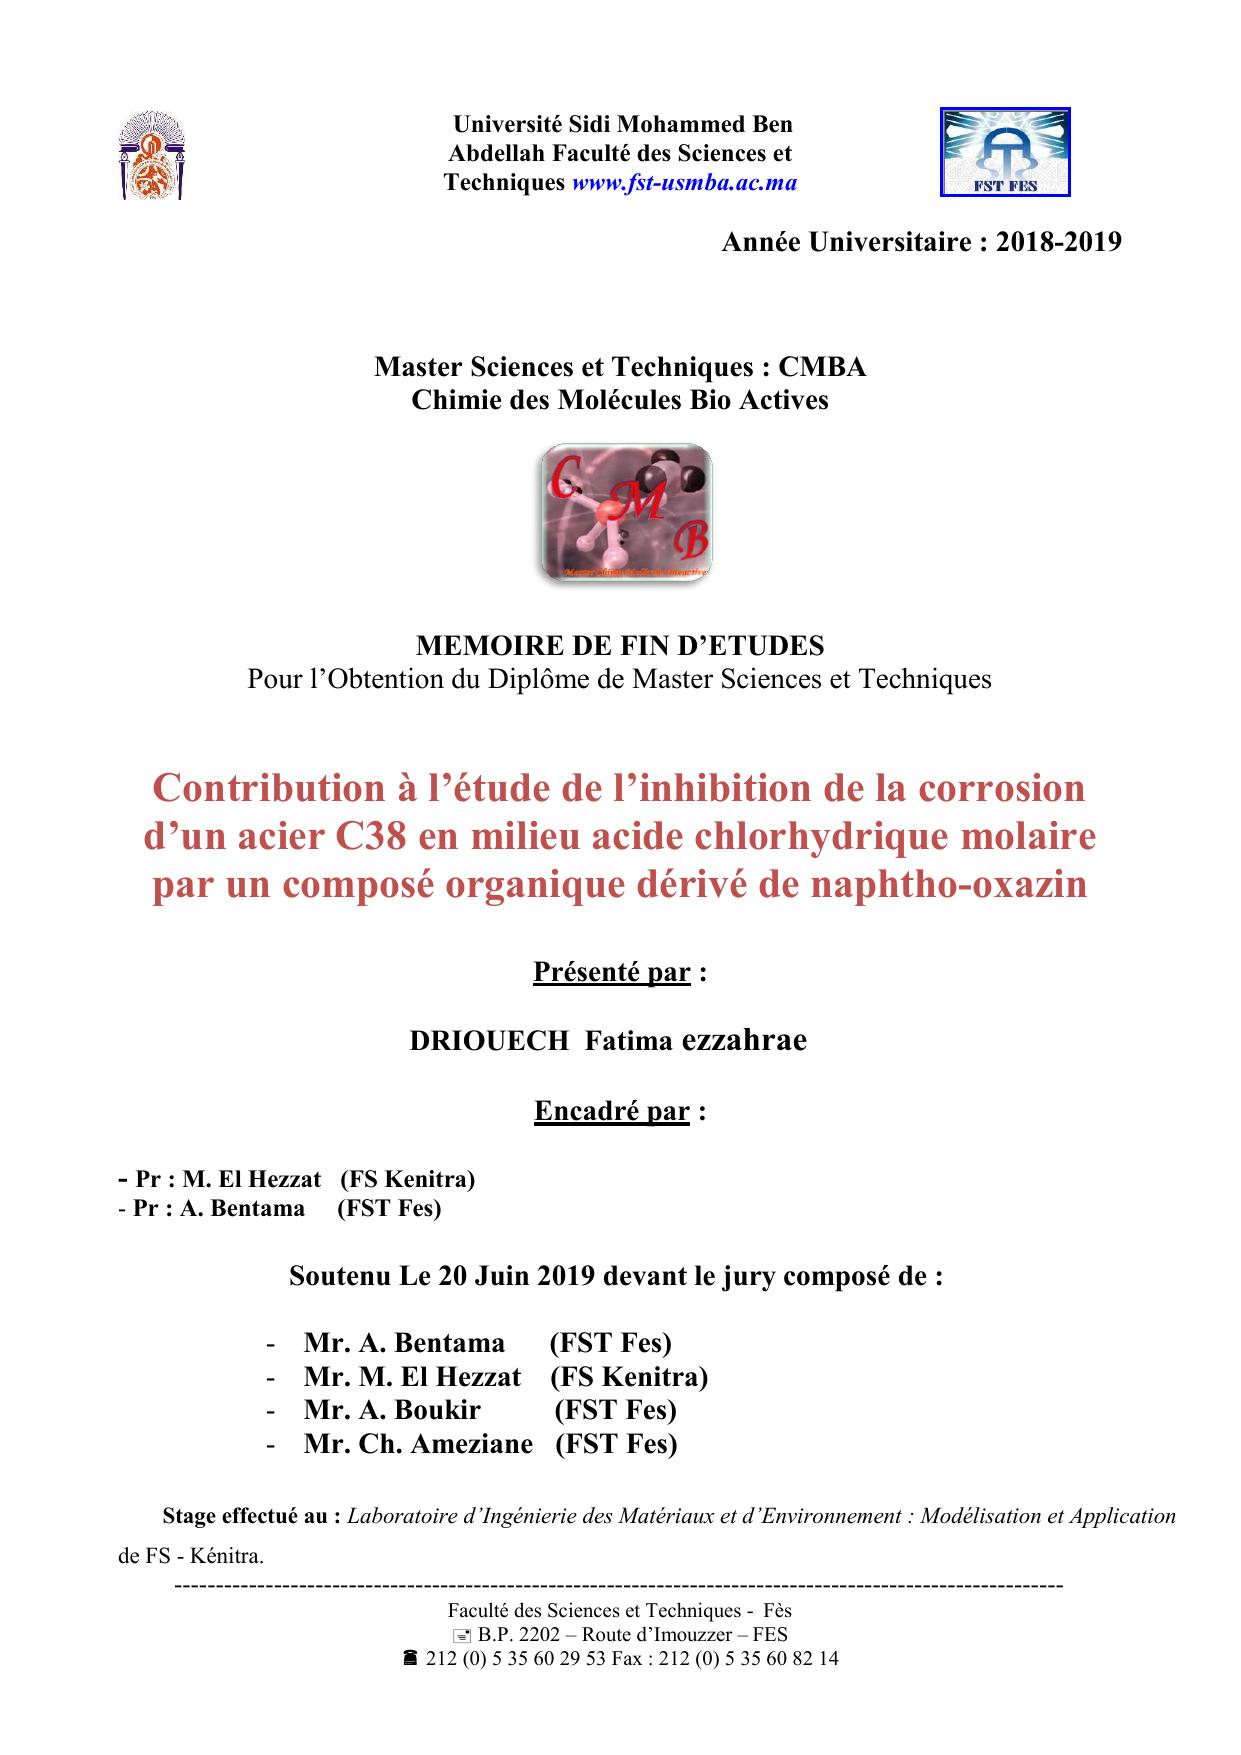 Contribution à l’étude de l’inhibition de la corrosion d’un acier C38 en milieu acide chlorhydrique molaire par un composé organique dérivé de naphtho-oxazin